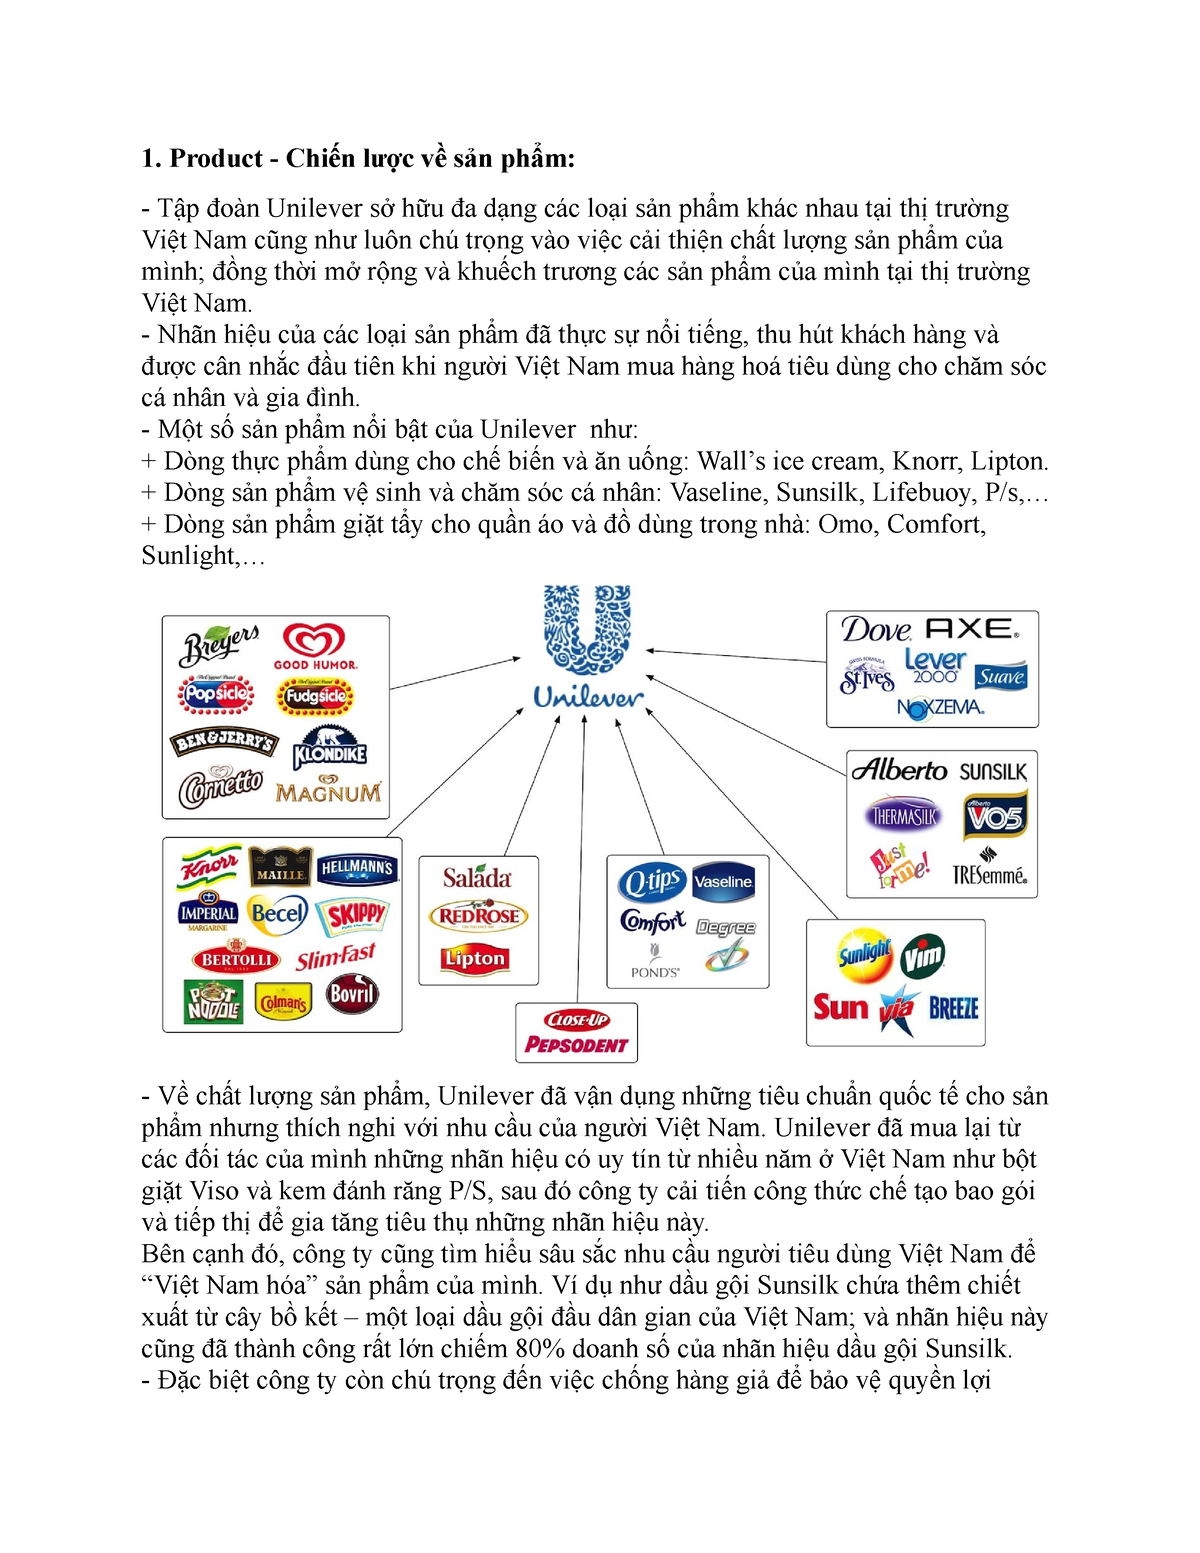 QT MKT- 4P của Unilever - 1. Product - Chiến lược về sản phẩm: Tập đoàn Unilever sở hữu đa dạng các - Studocu